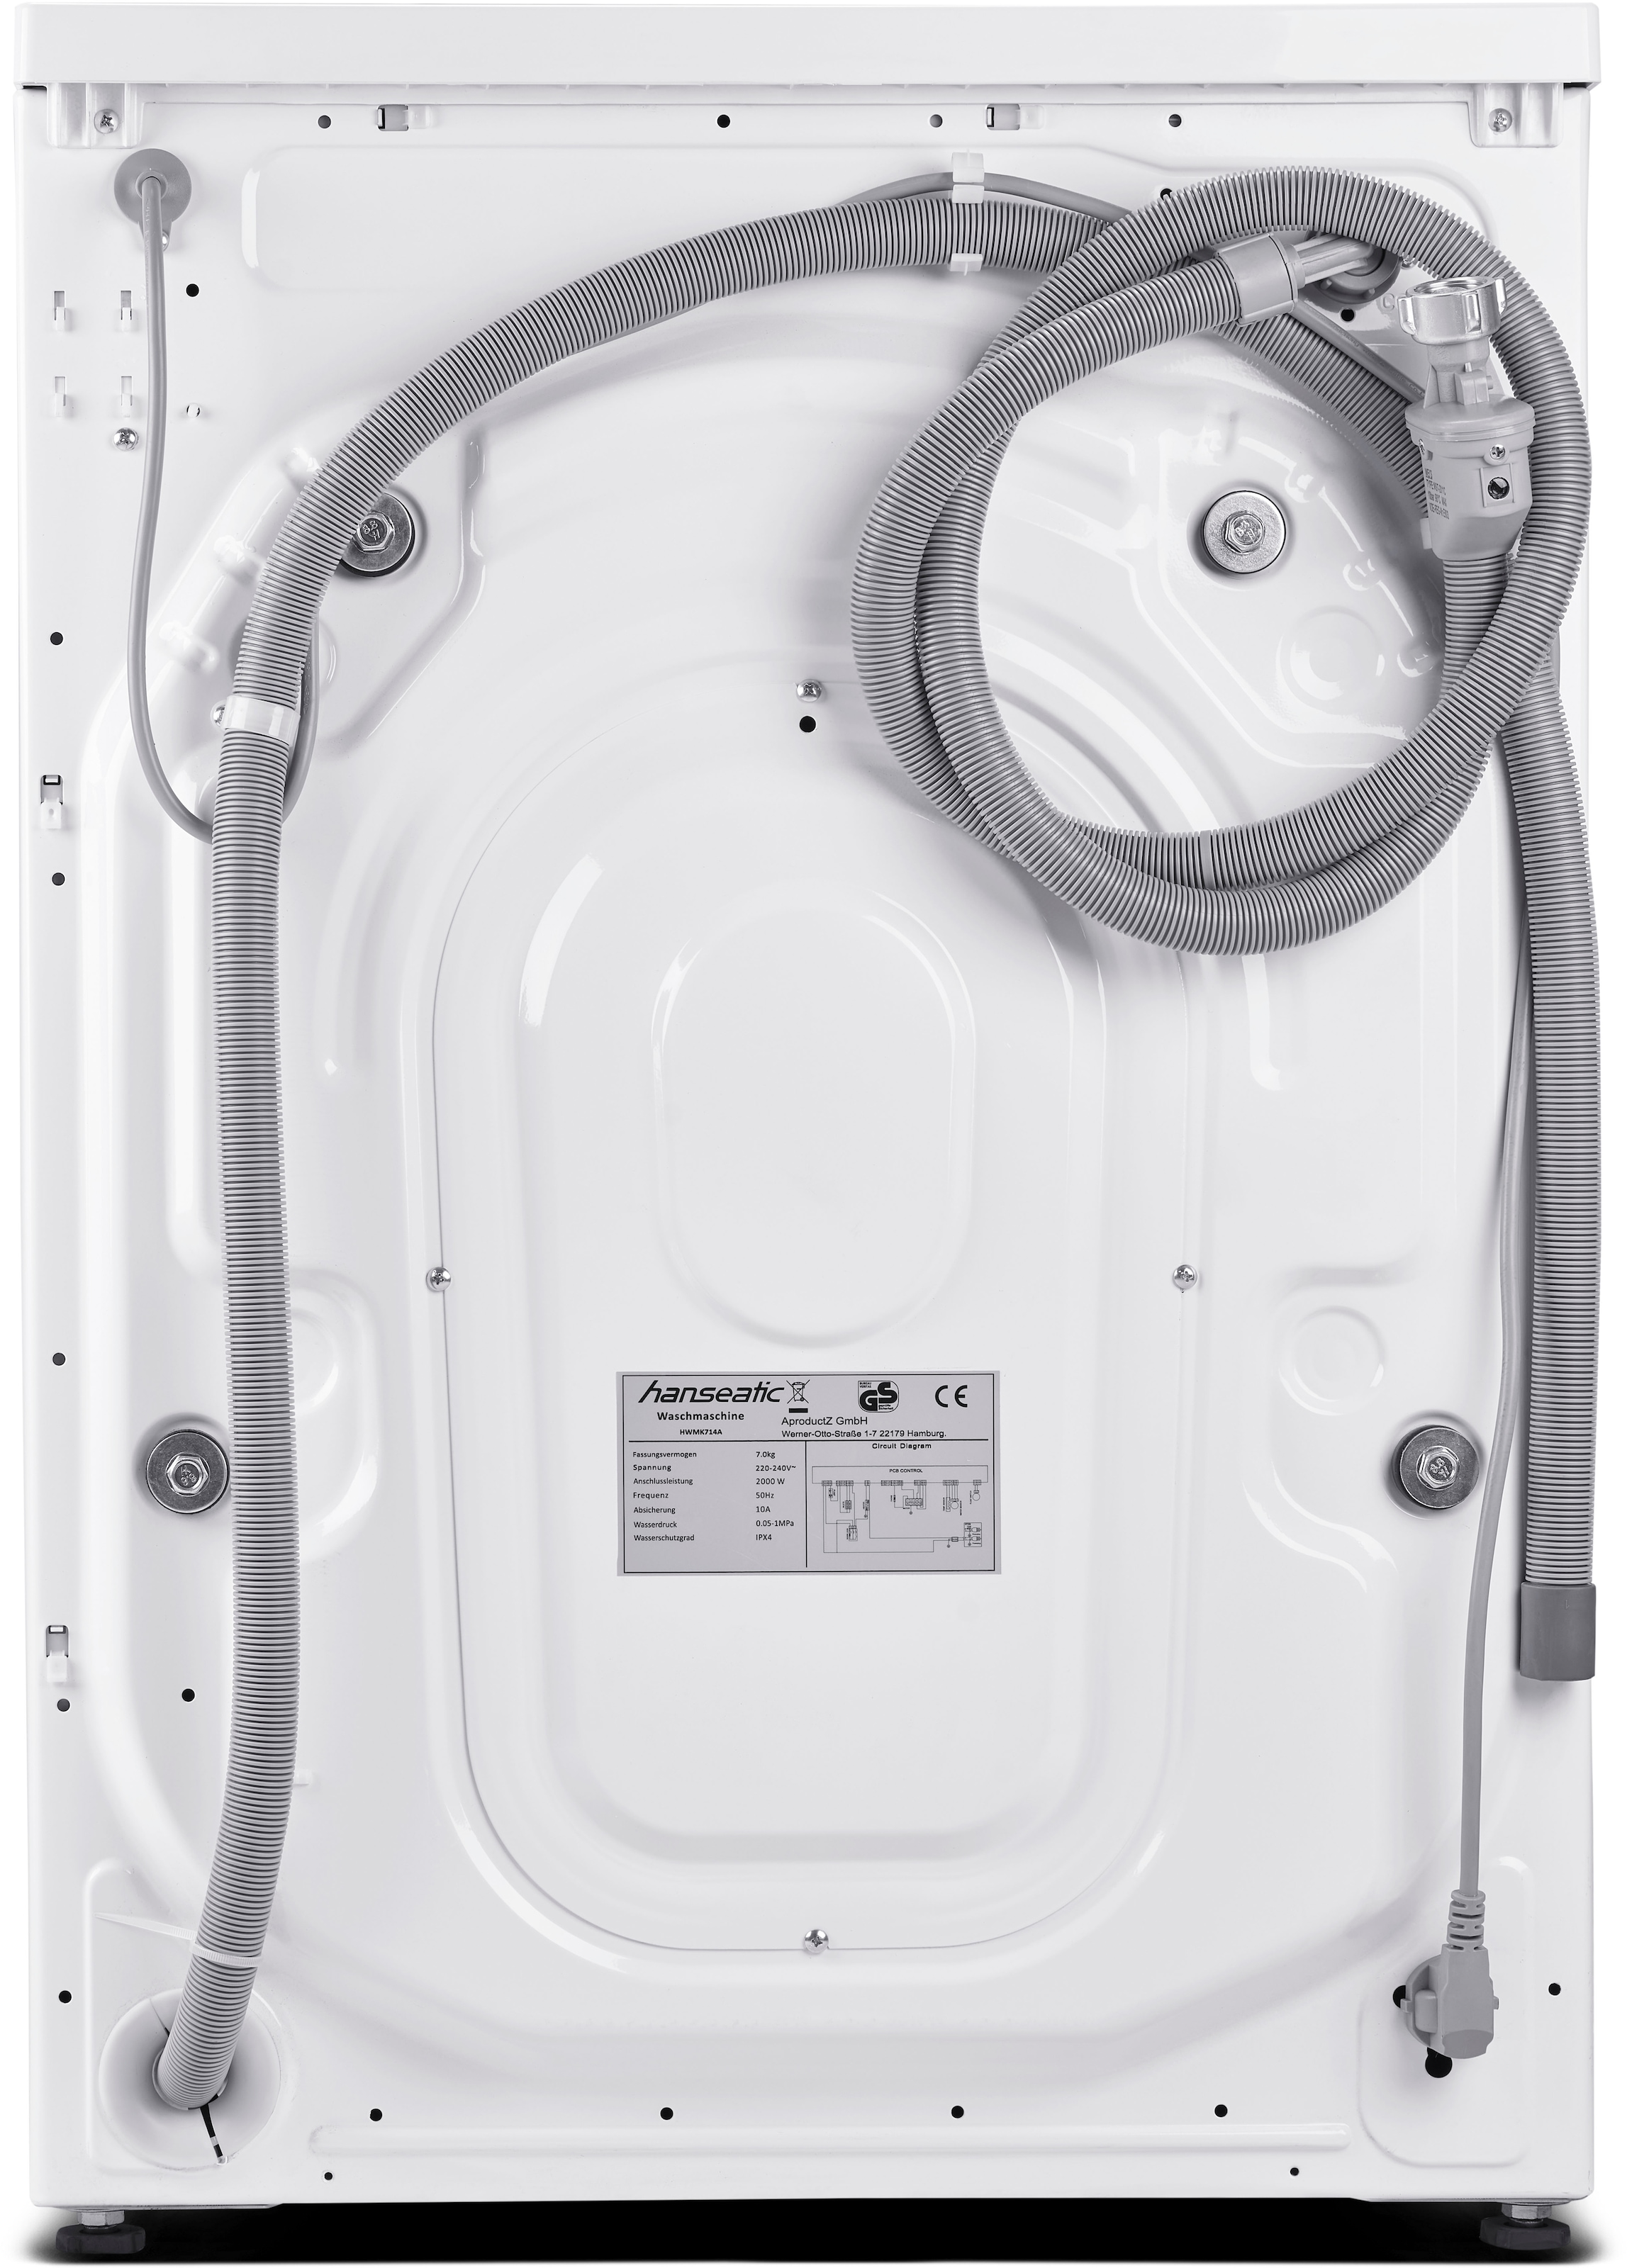 Hanseatic Waschmaschine, HWMK714A, 7 kg, 1400 U/min, Mengenautomatik, Nachtwaschprogramm, Vollwasserschutz, Dampfoption